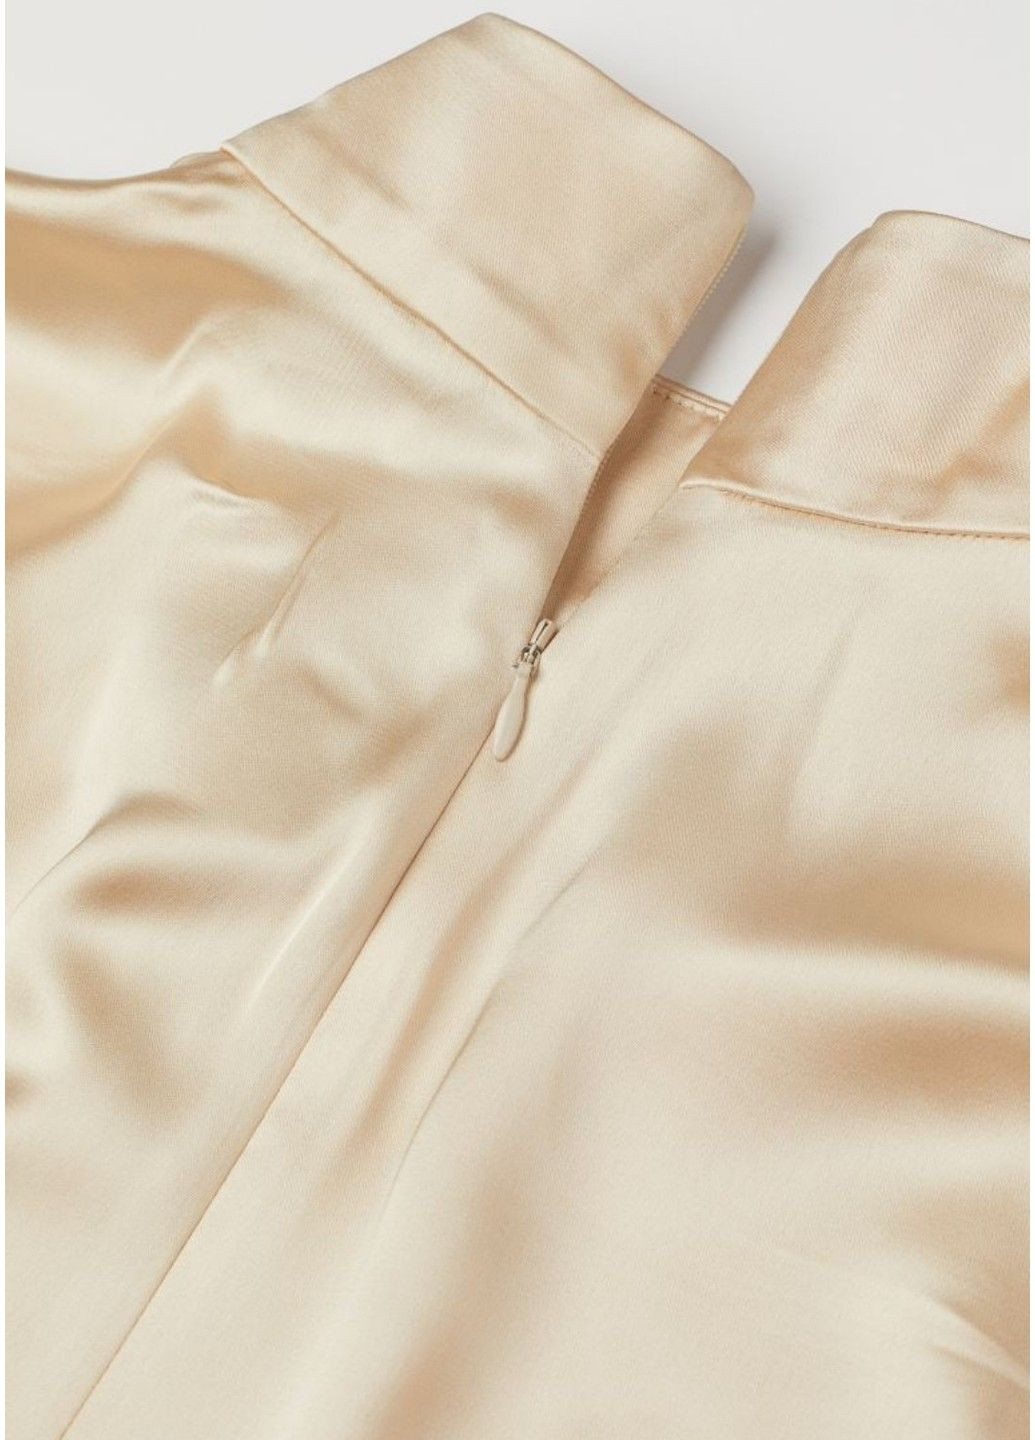 Світло-бежева ділова жіноча атласна сукня н&м (56667) xs світло-бежева H&M